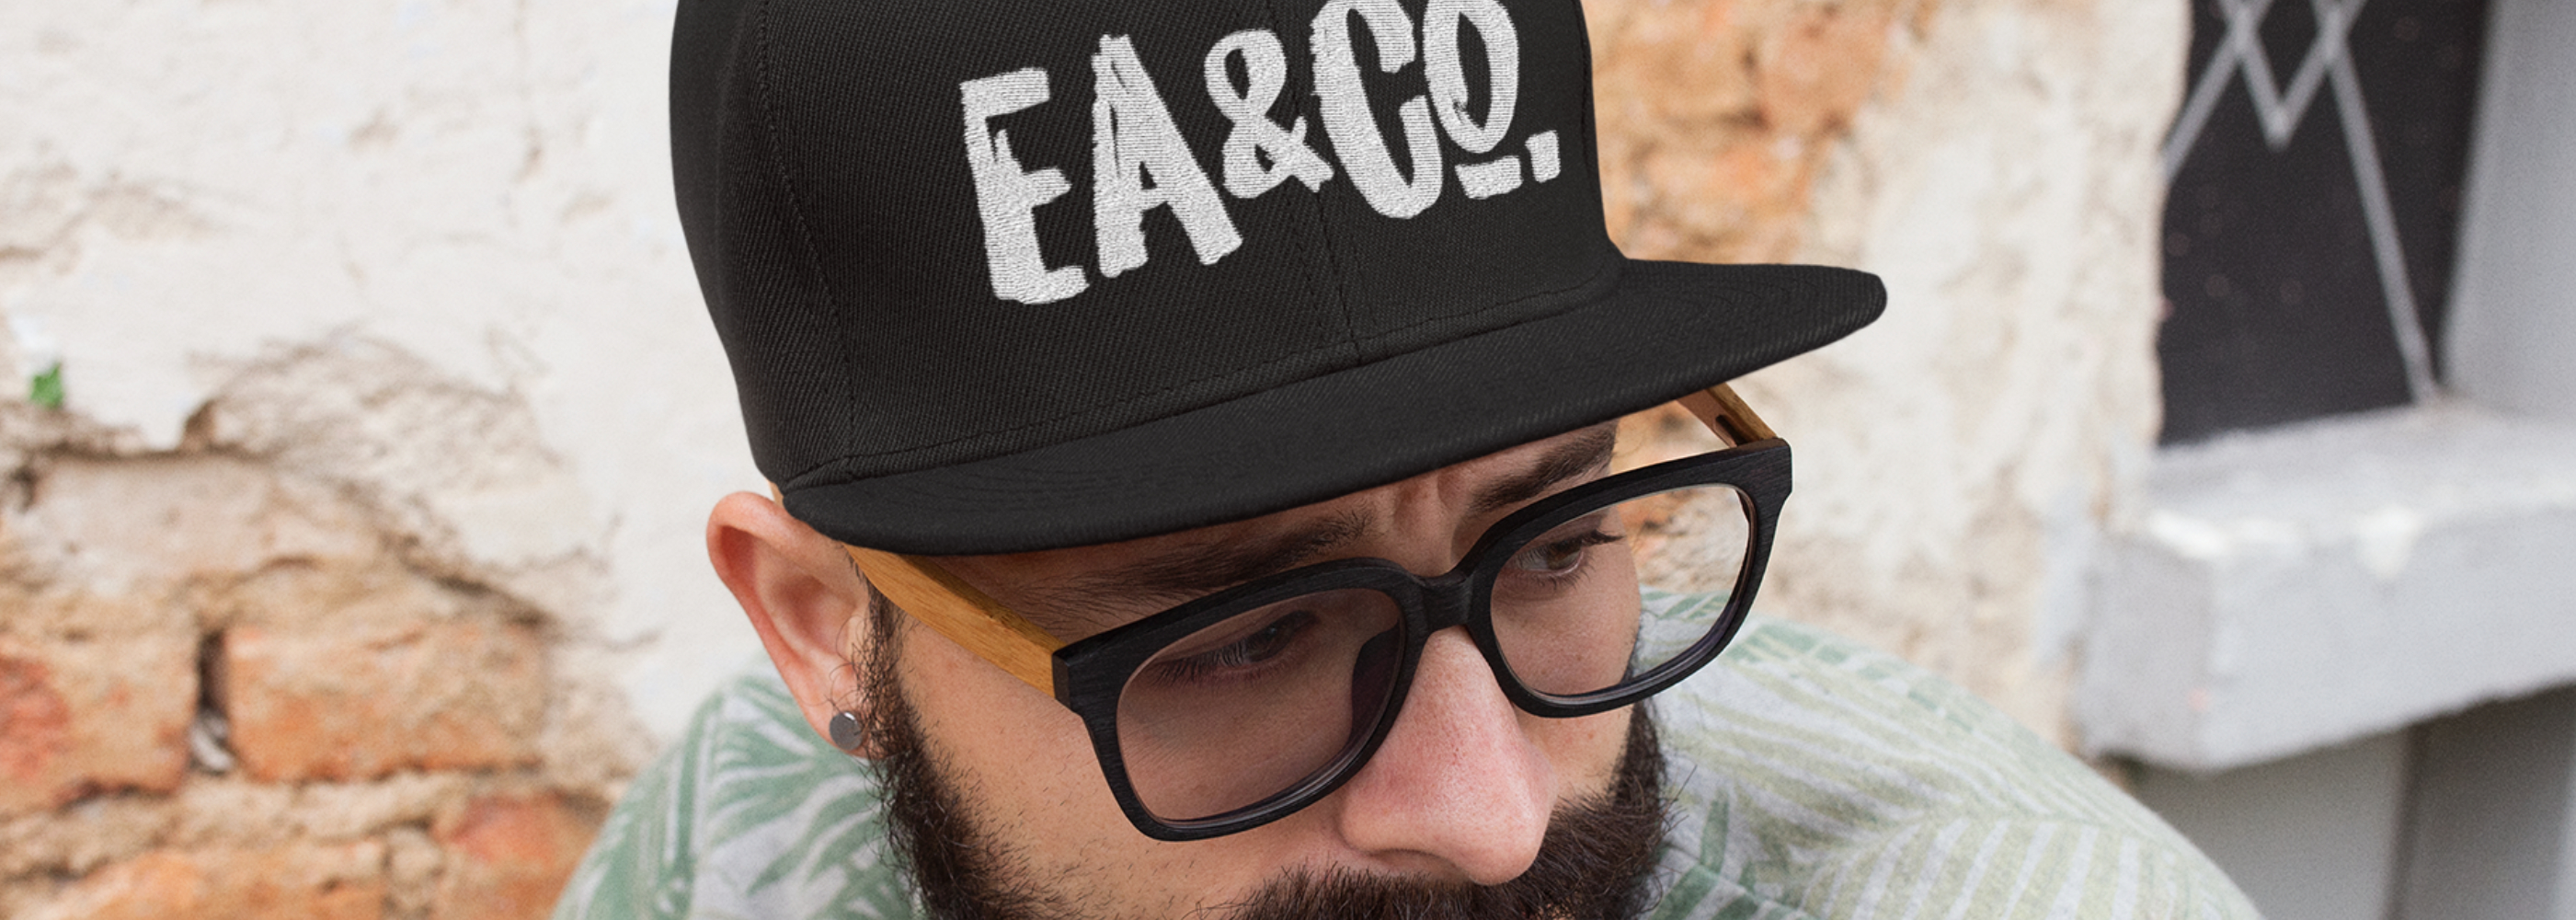 Hats / Beanies / Headwear | Evoke Apparel